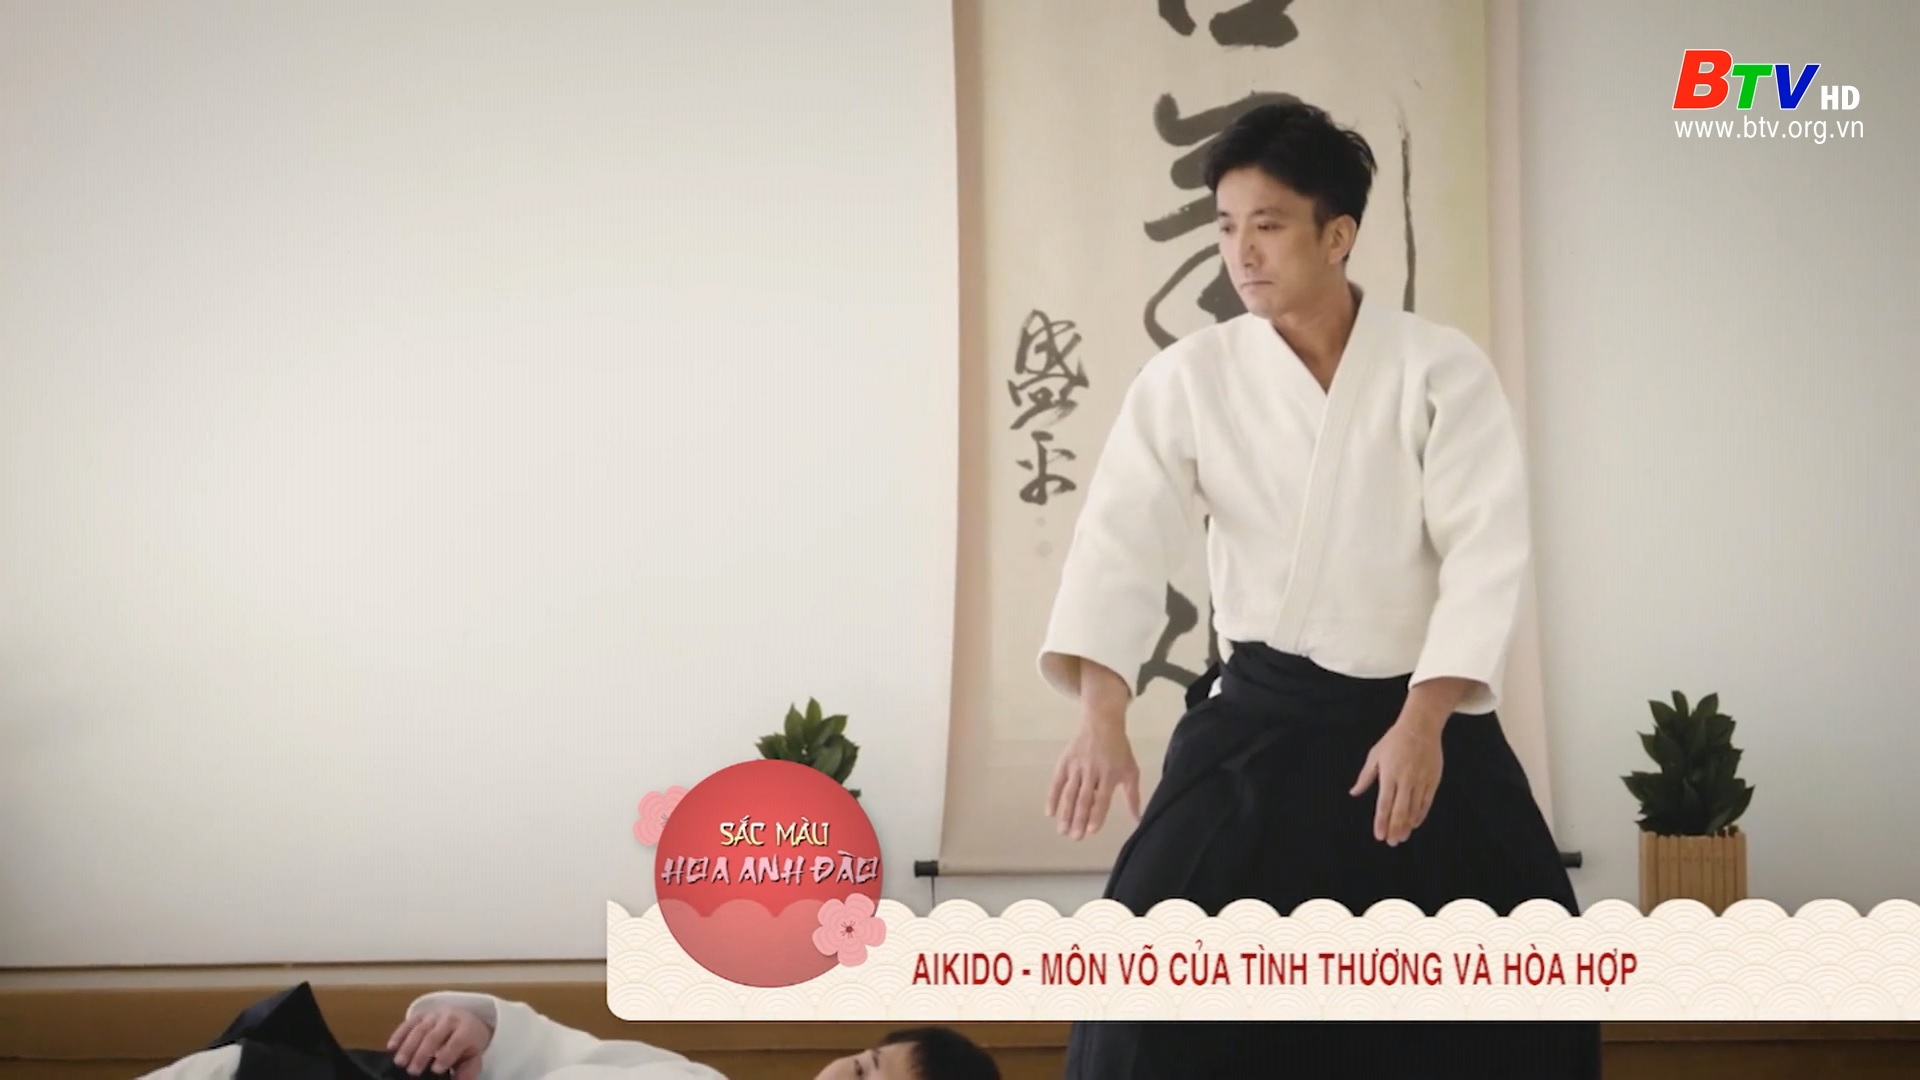 Aikido – Môn võ của tình thương và hòa hợp